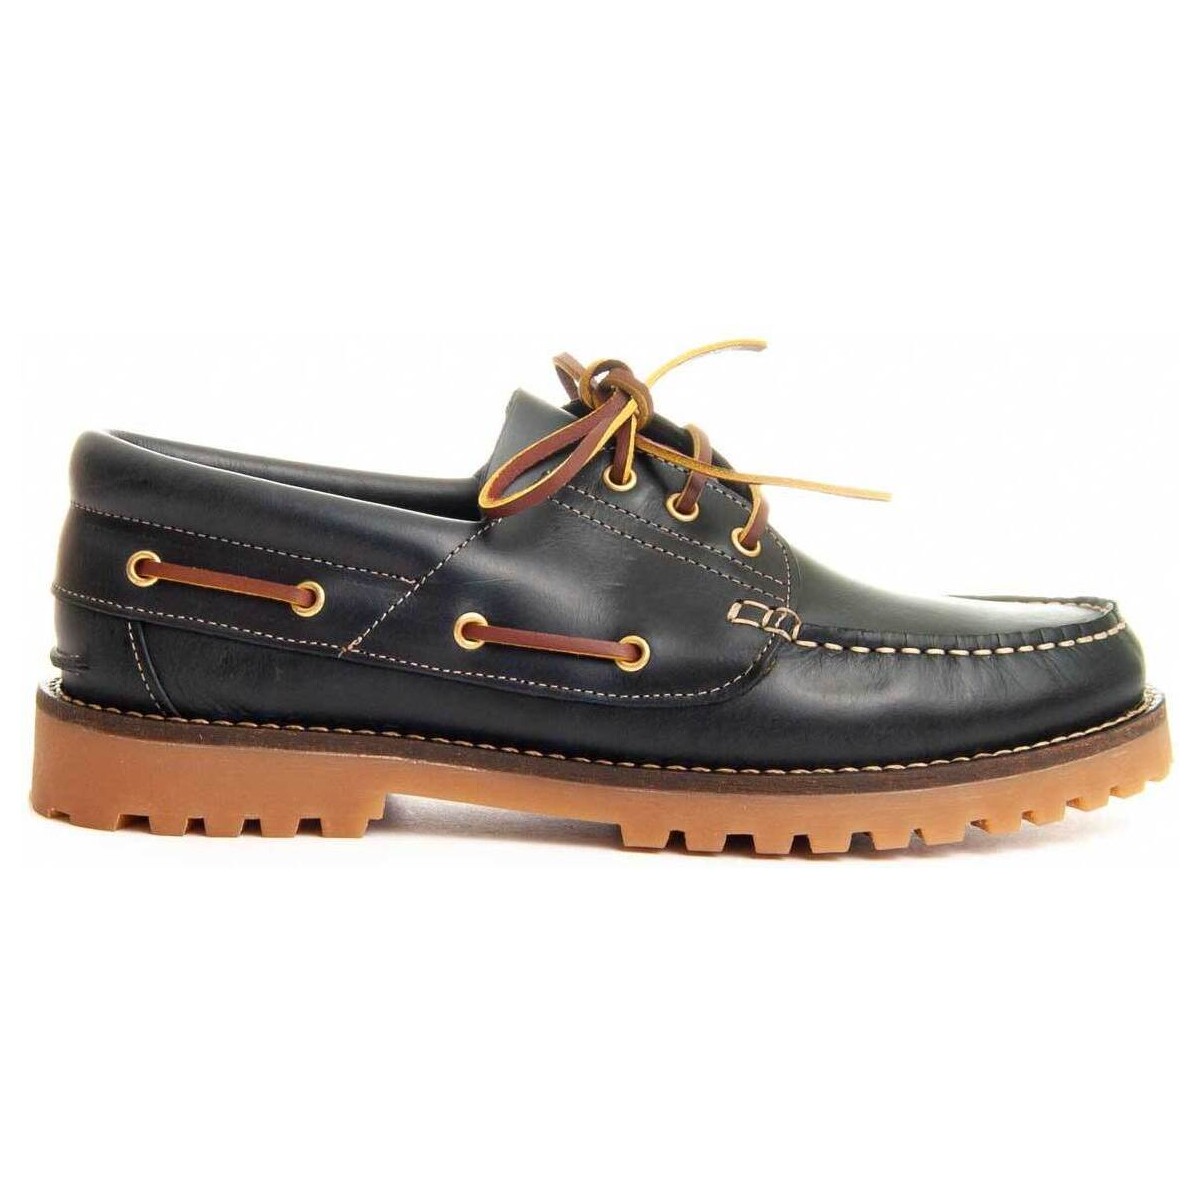 Παπούτσια Άνδρας Boat shoes Purapiel 89137 Μπλέ